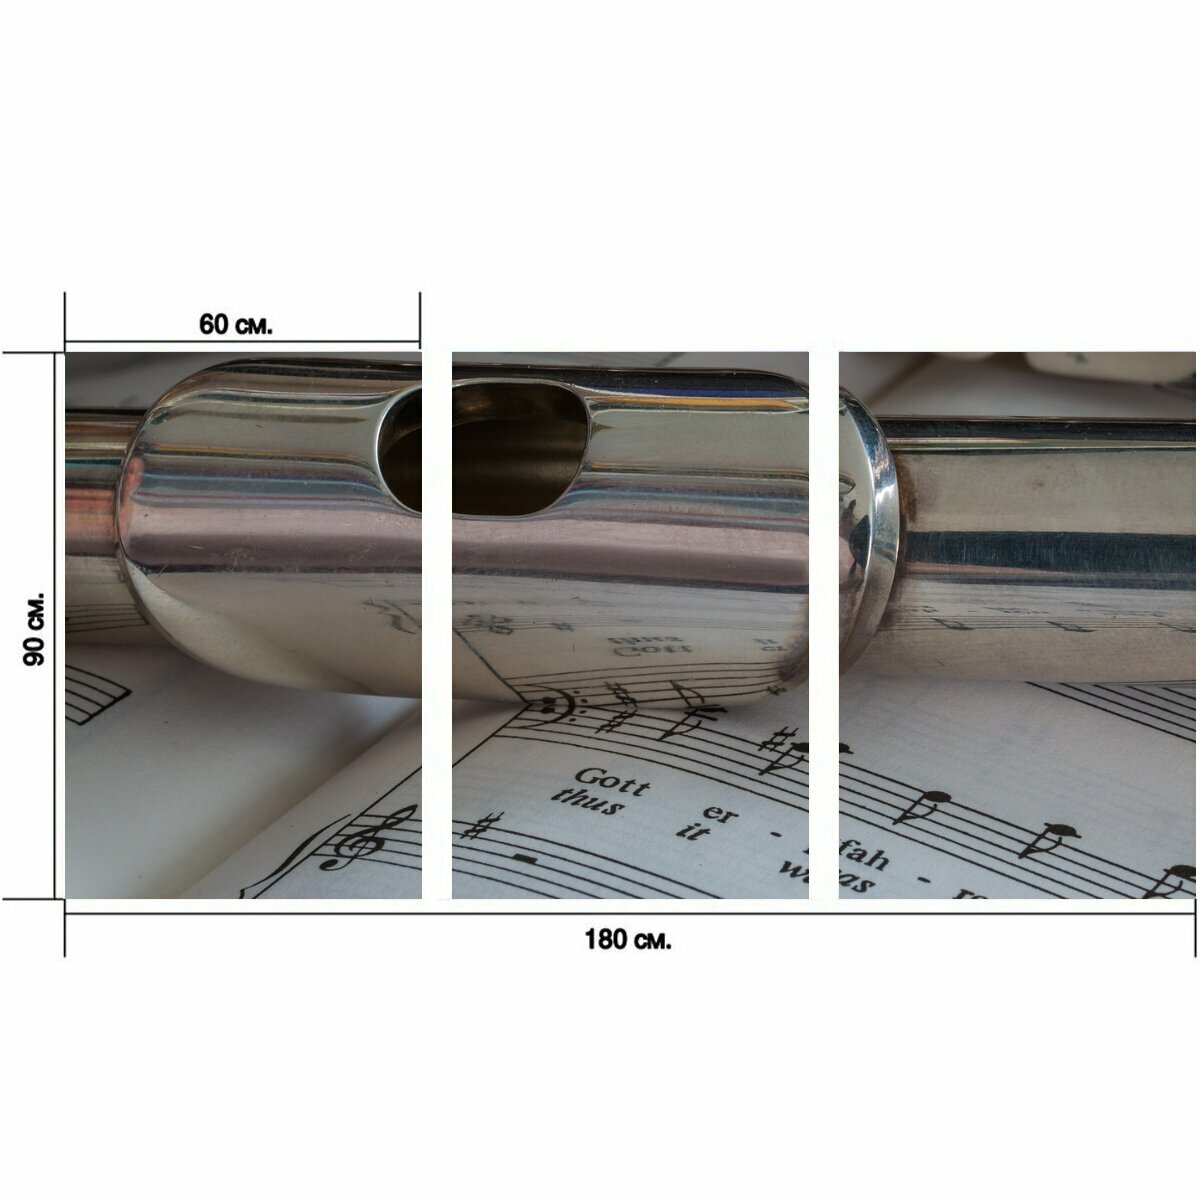 Модульный постер "Флейта, музыкальный инструмент, серебряное покрытие" 180 x 90 см. для интерьера